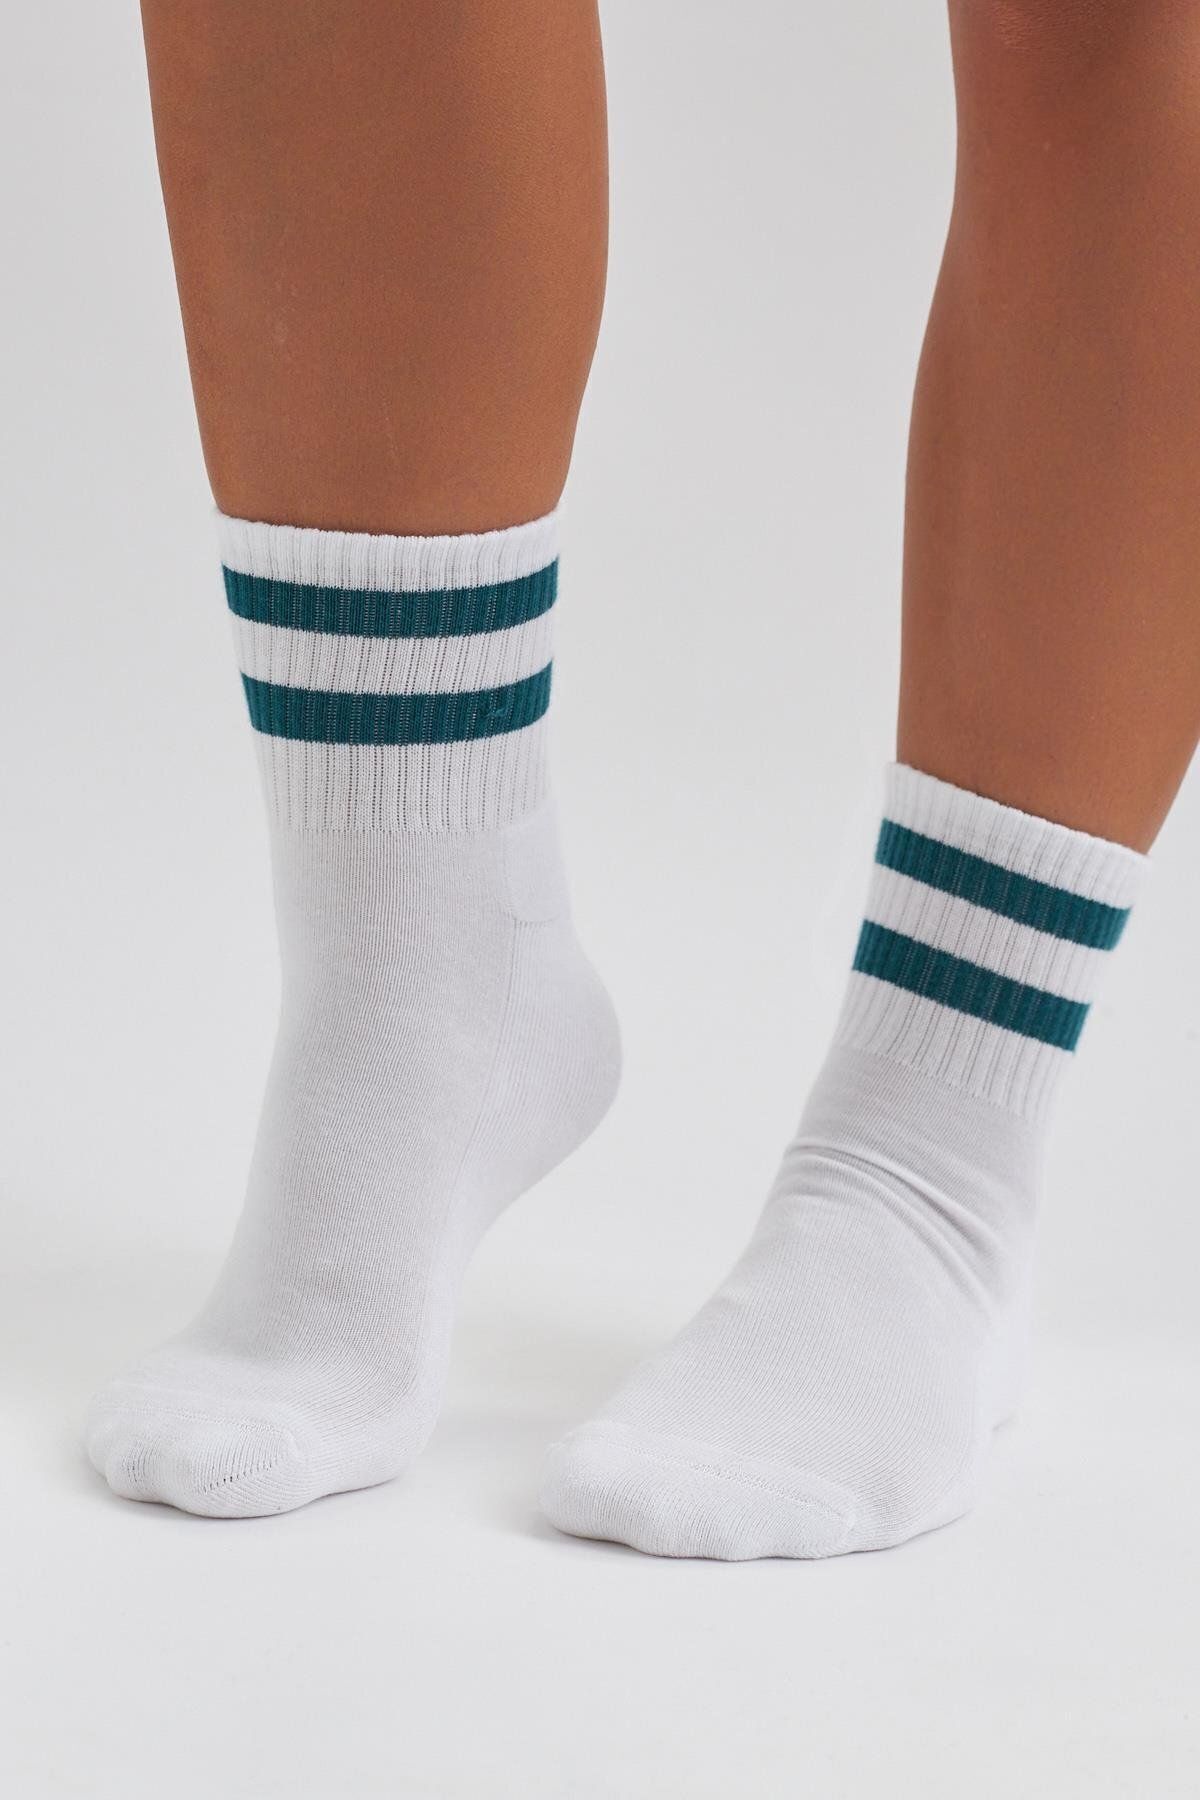 Katia & Bony Erkek Havlu Taban Çizgili Kısa Konç Soket Çorap Beyaz/yeşil